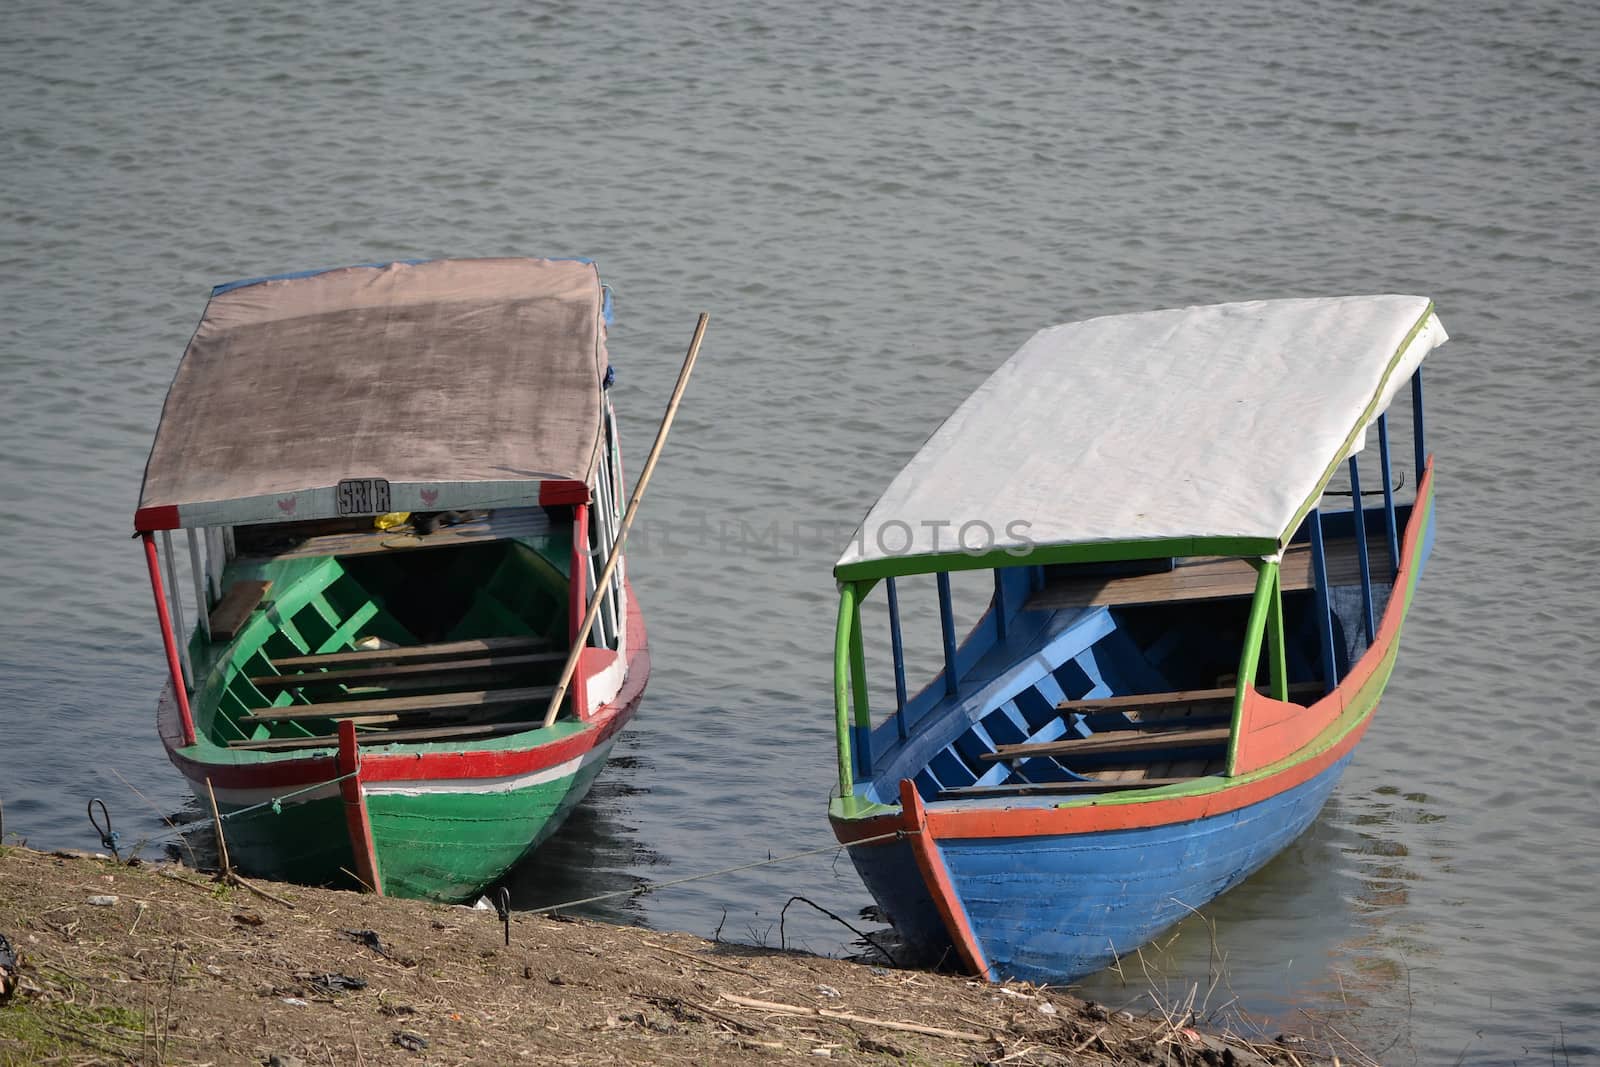 padalarang, indonesia-august 1, 2014: boat that people used for fishing at saguling lake padalarang, west java-indonesia.